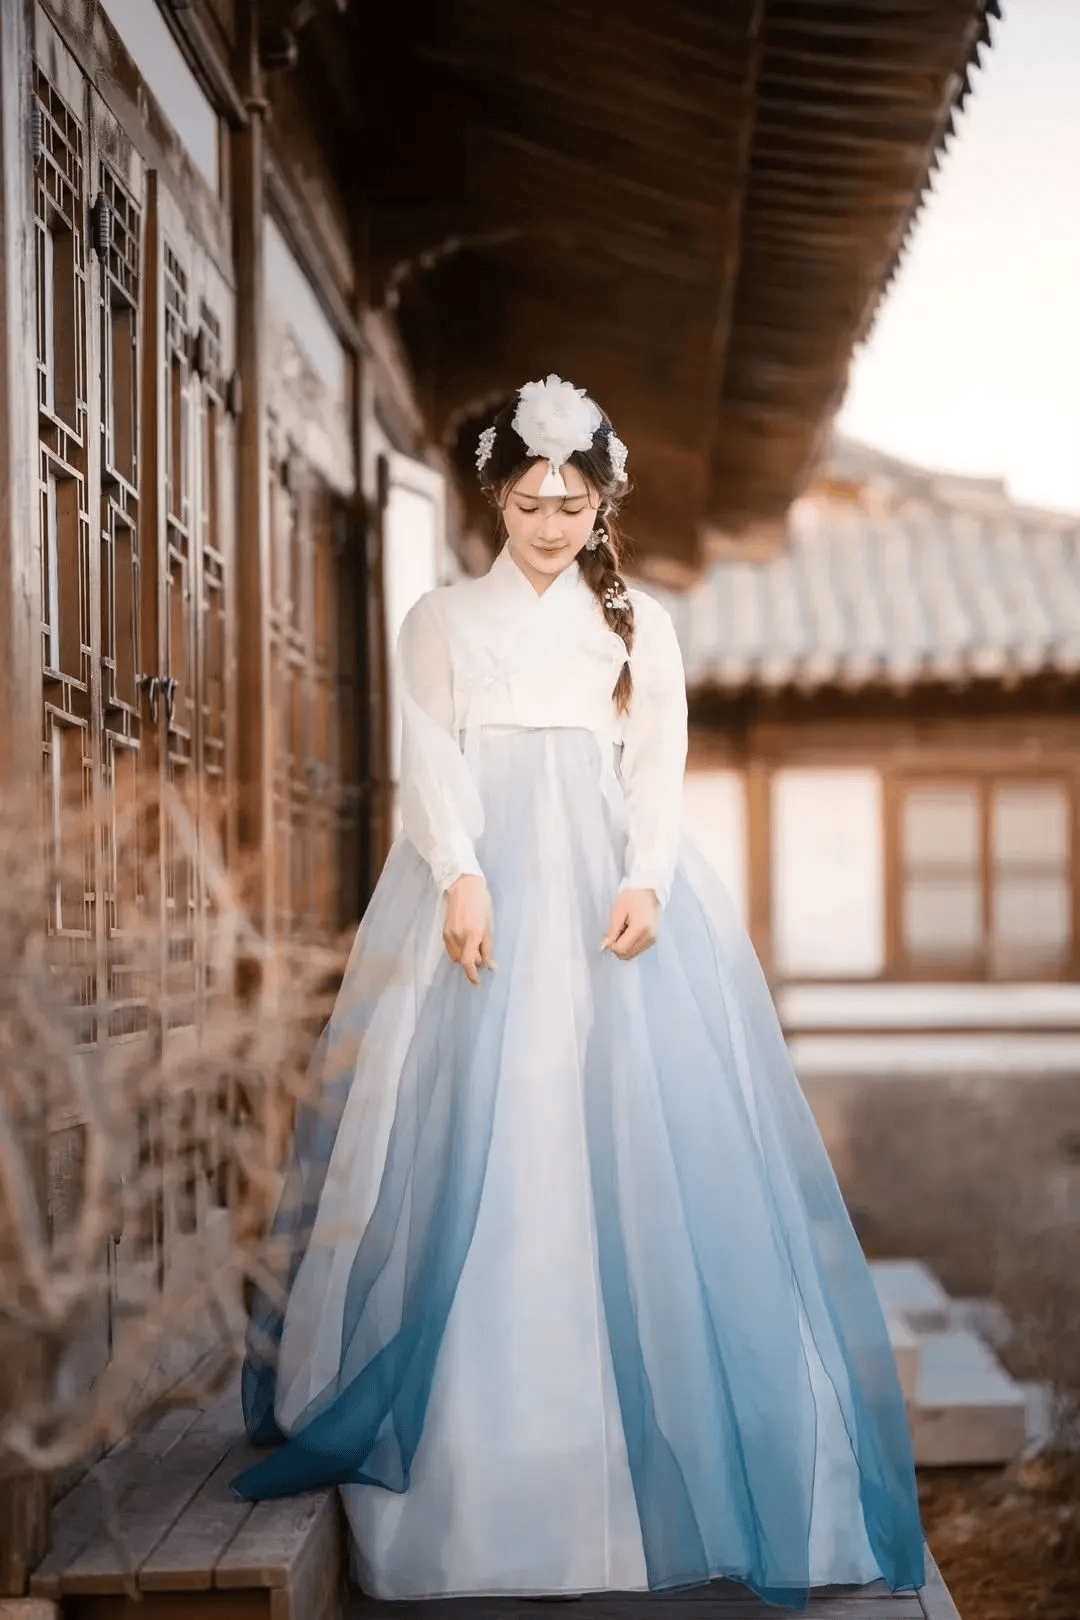 朝鲜族服装的裁剪图片图片